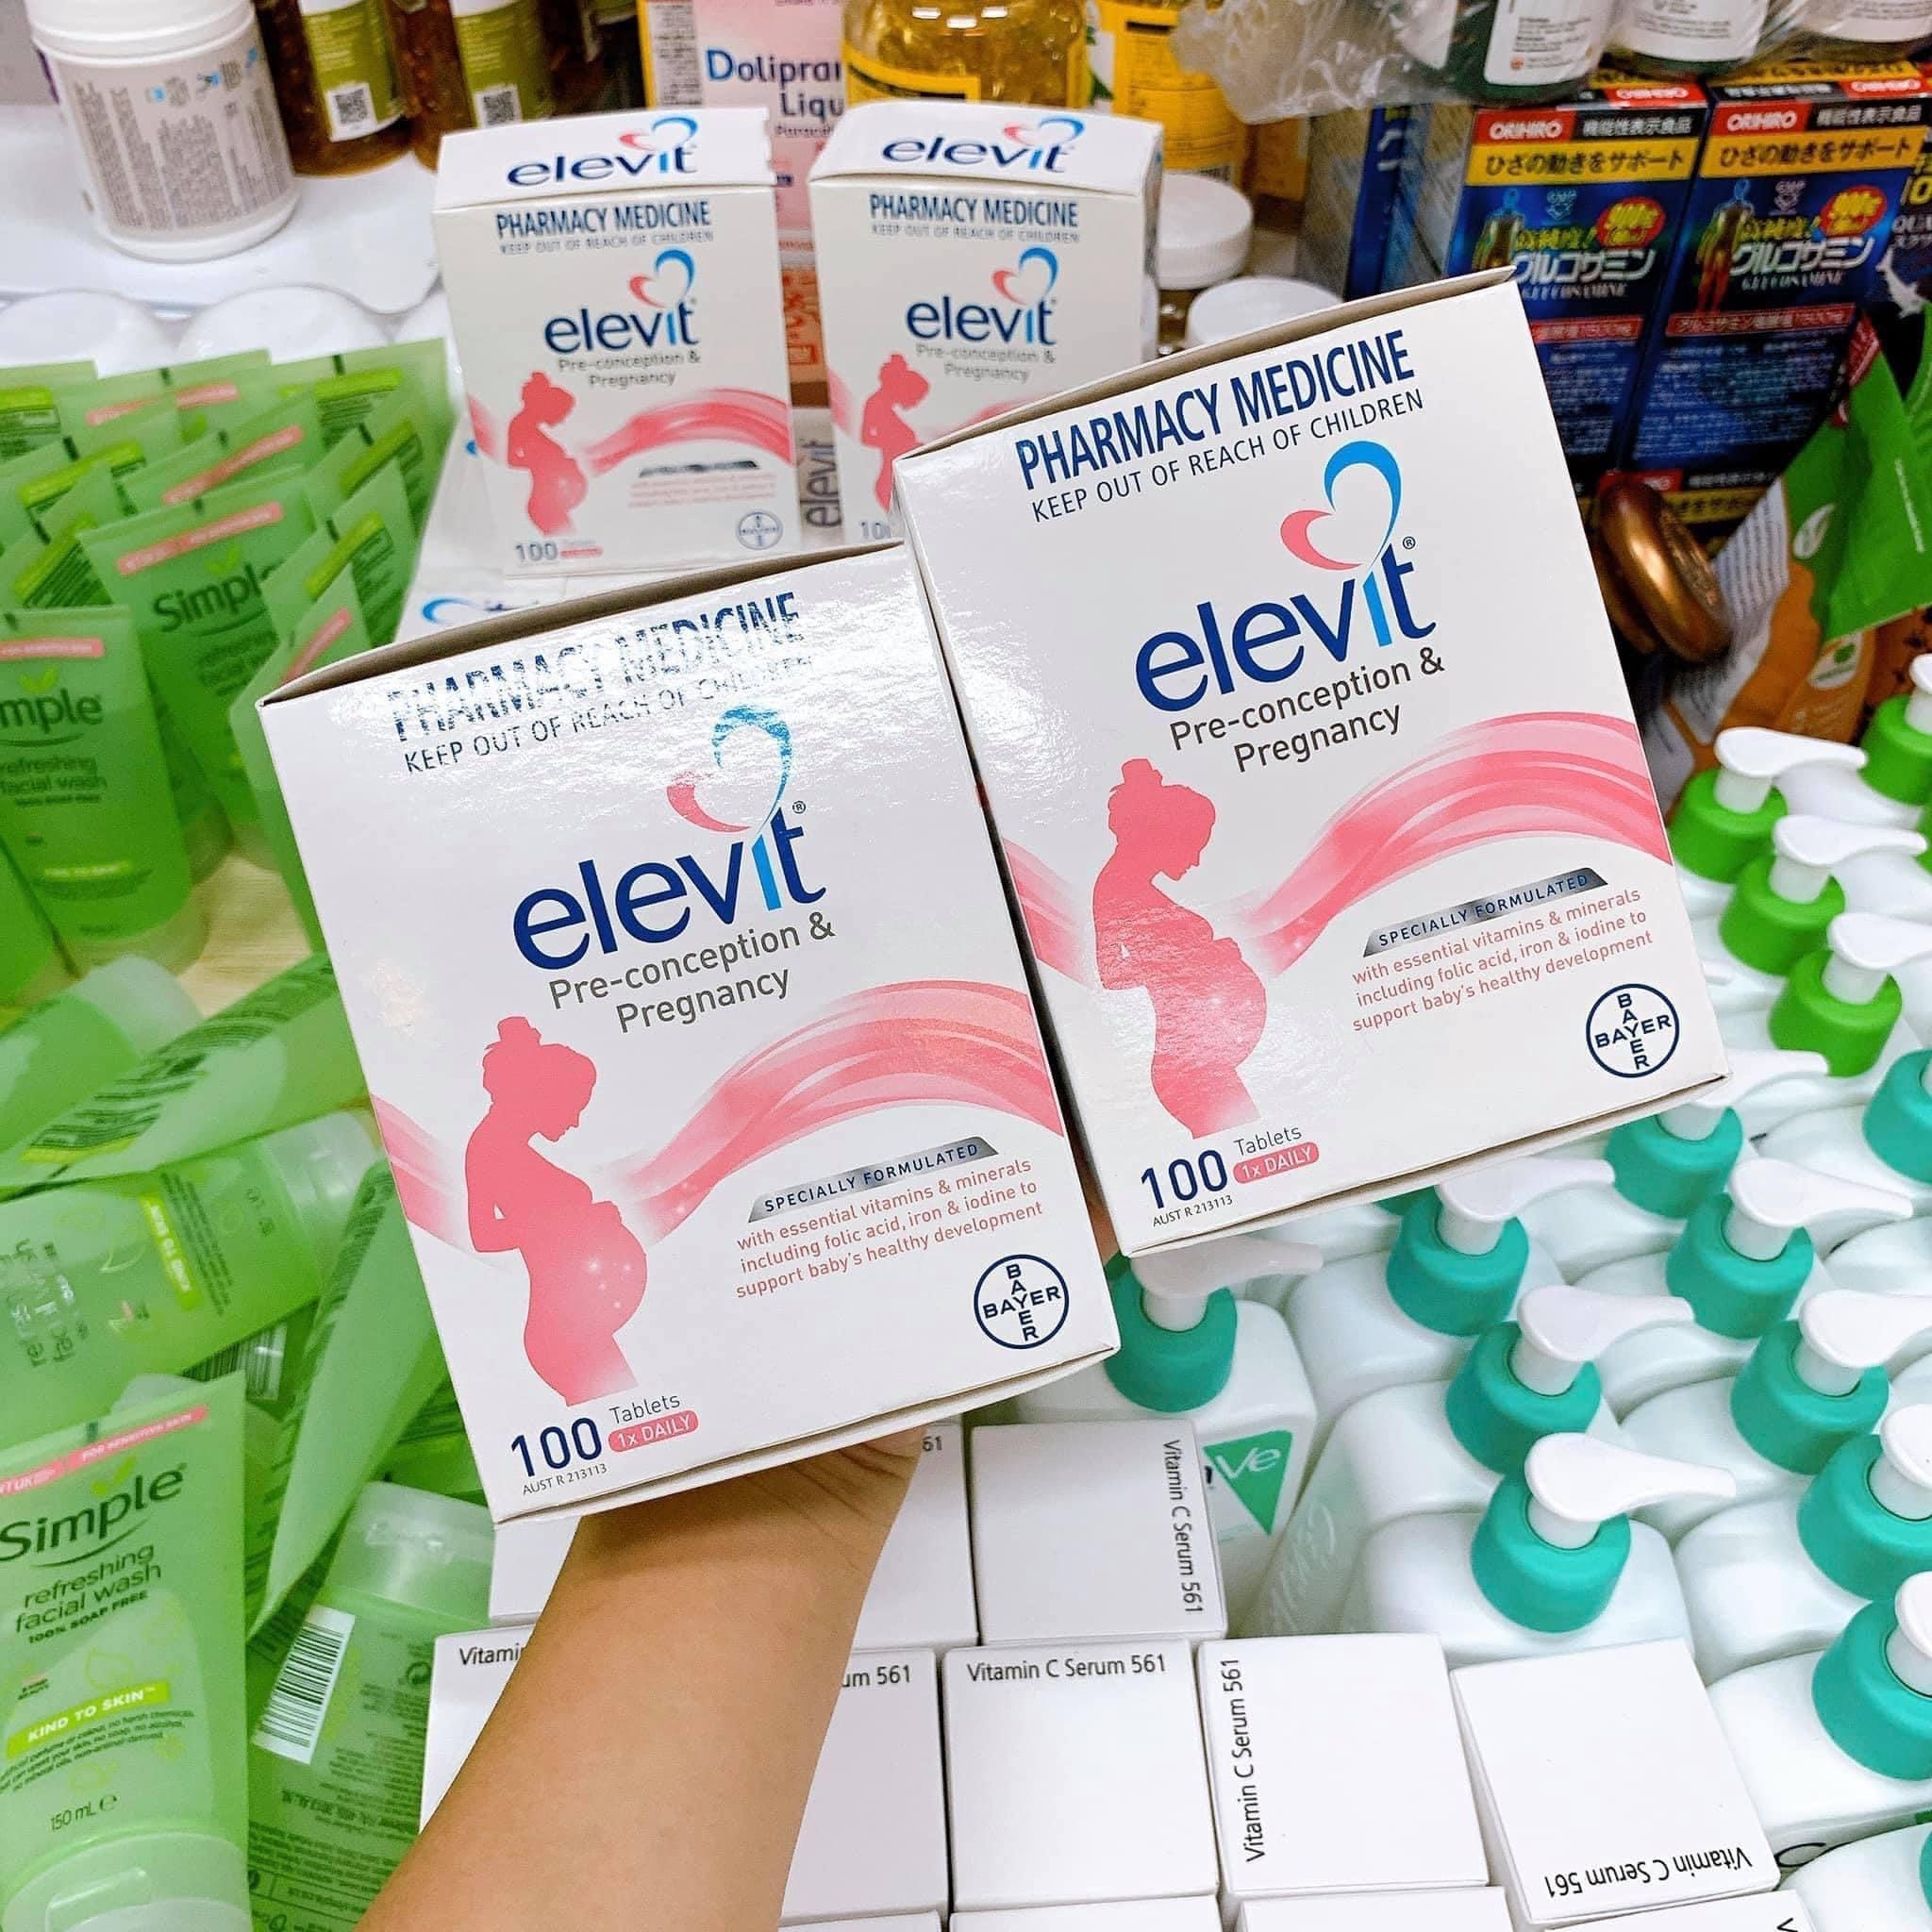 Elevit có chứa những thành phần chính nào giúp cung cấp dinh dưỡng cho mẹ bầu trước khi mang thai?
